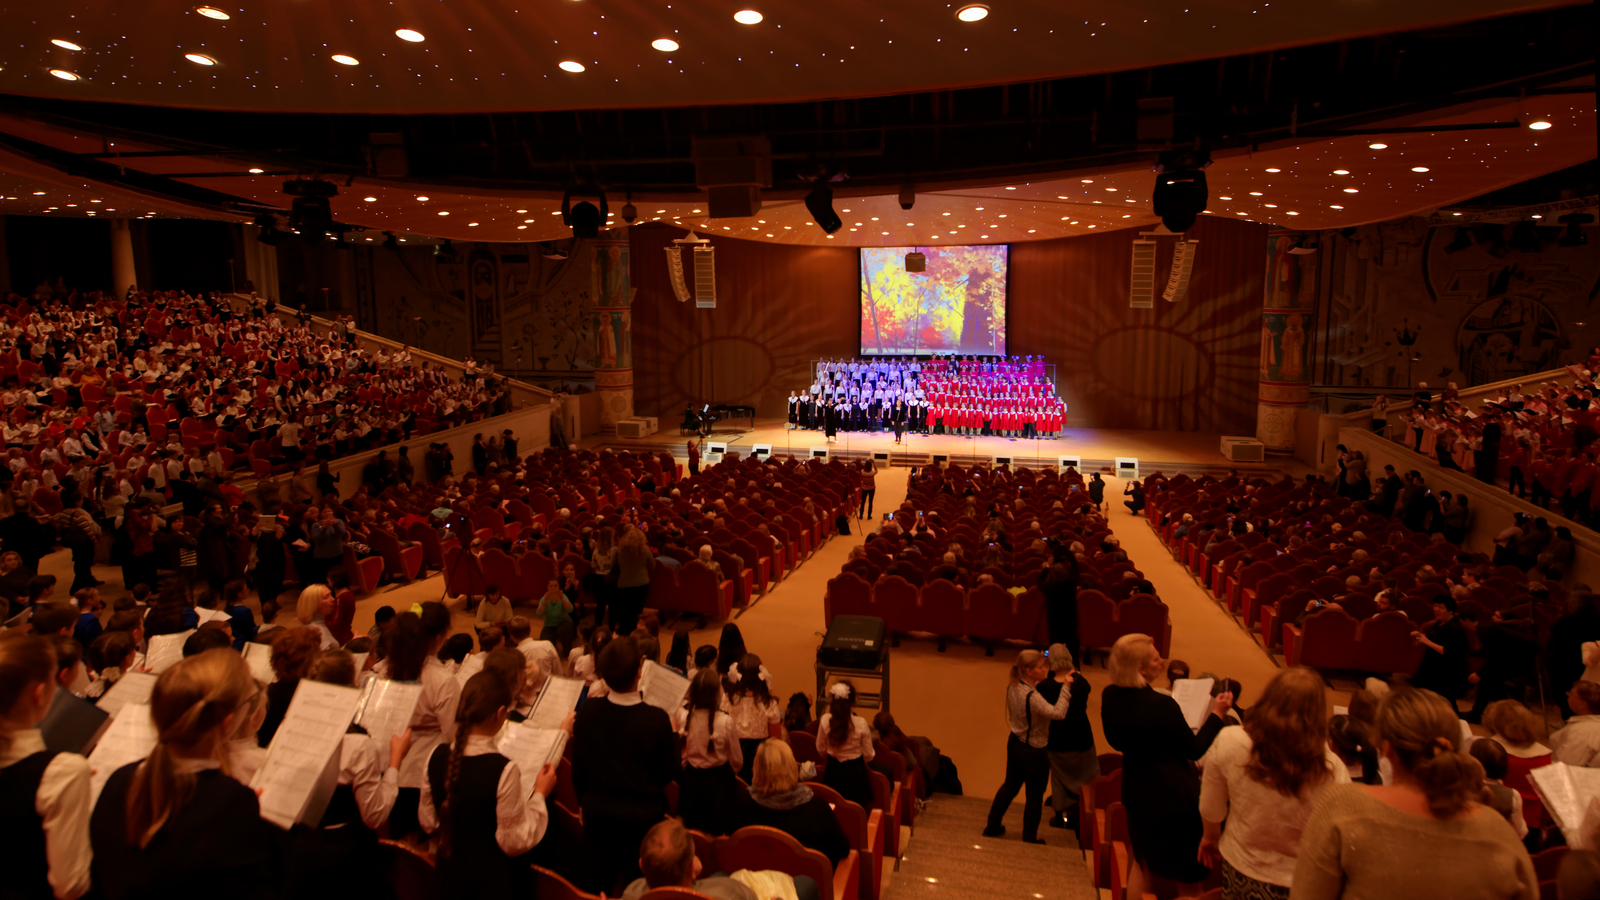 Концертный зал москва остров мечты схема зала с местами